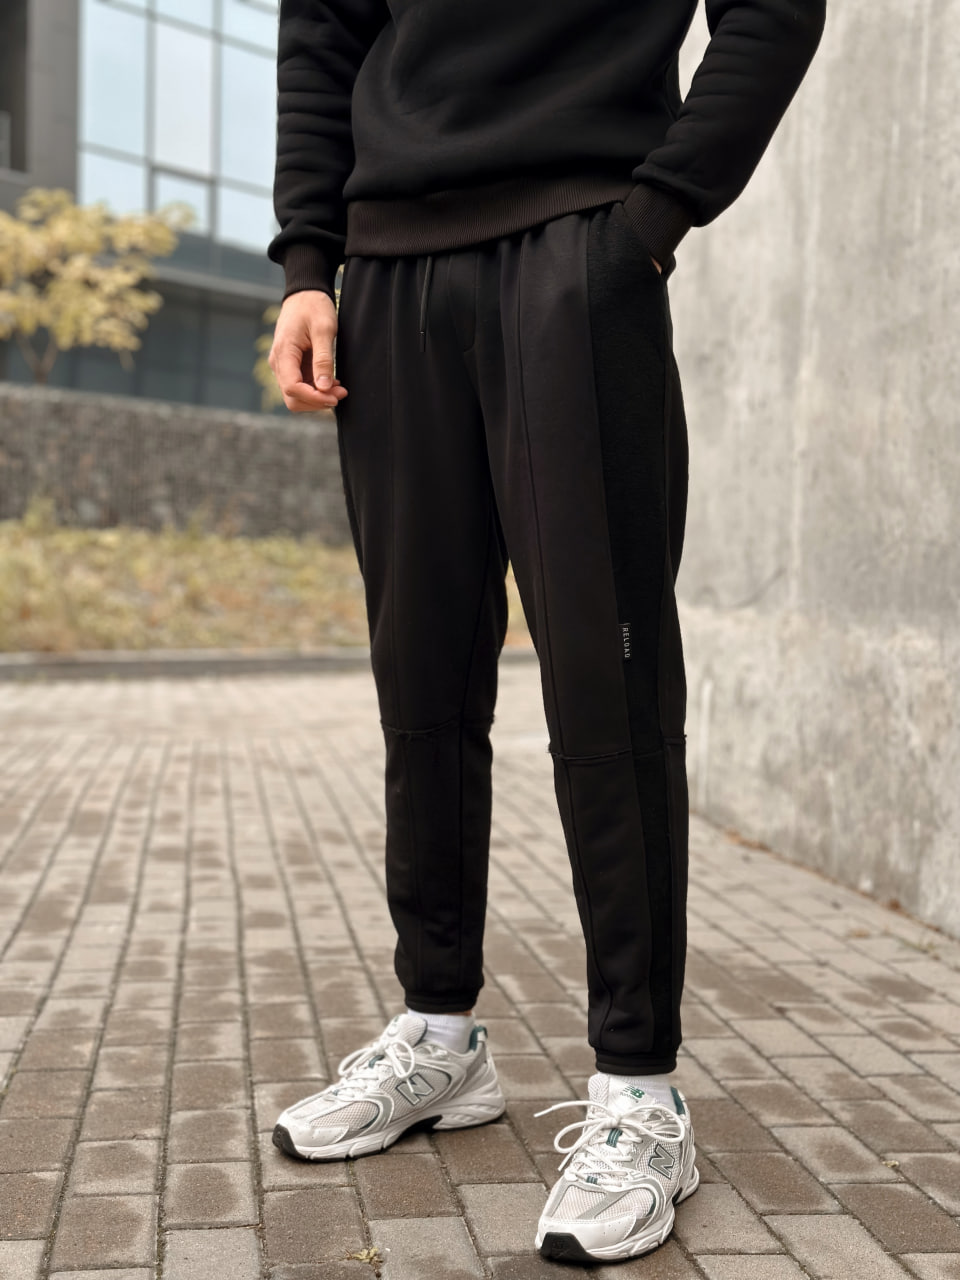 Чоловічі спортивні штани трикотажні Reload Rough чорні / Спортивки завуженні стильні демісезонні - Фото 2